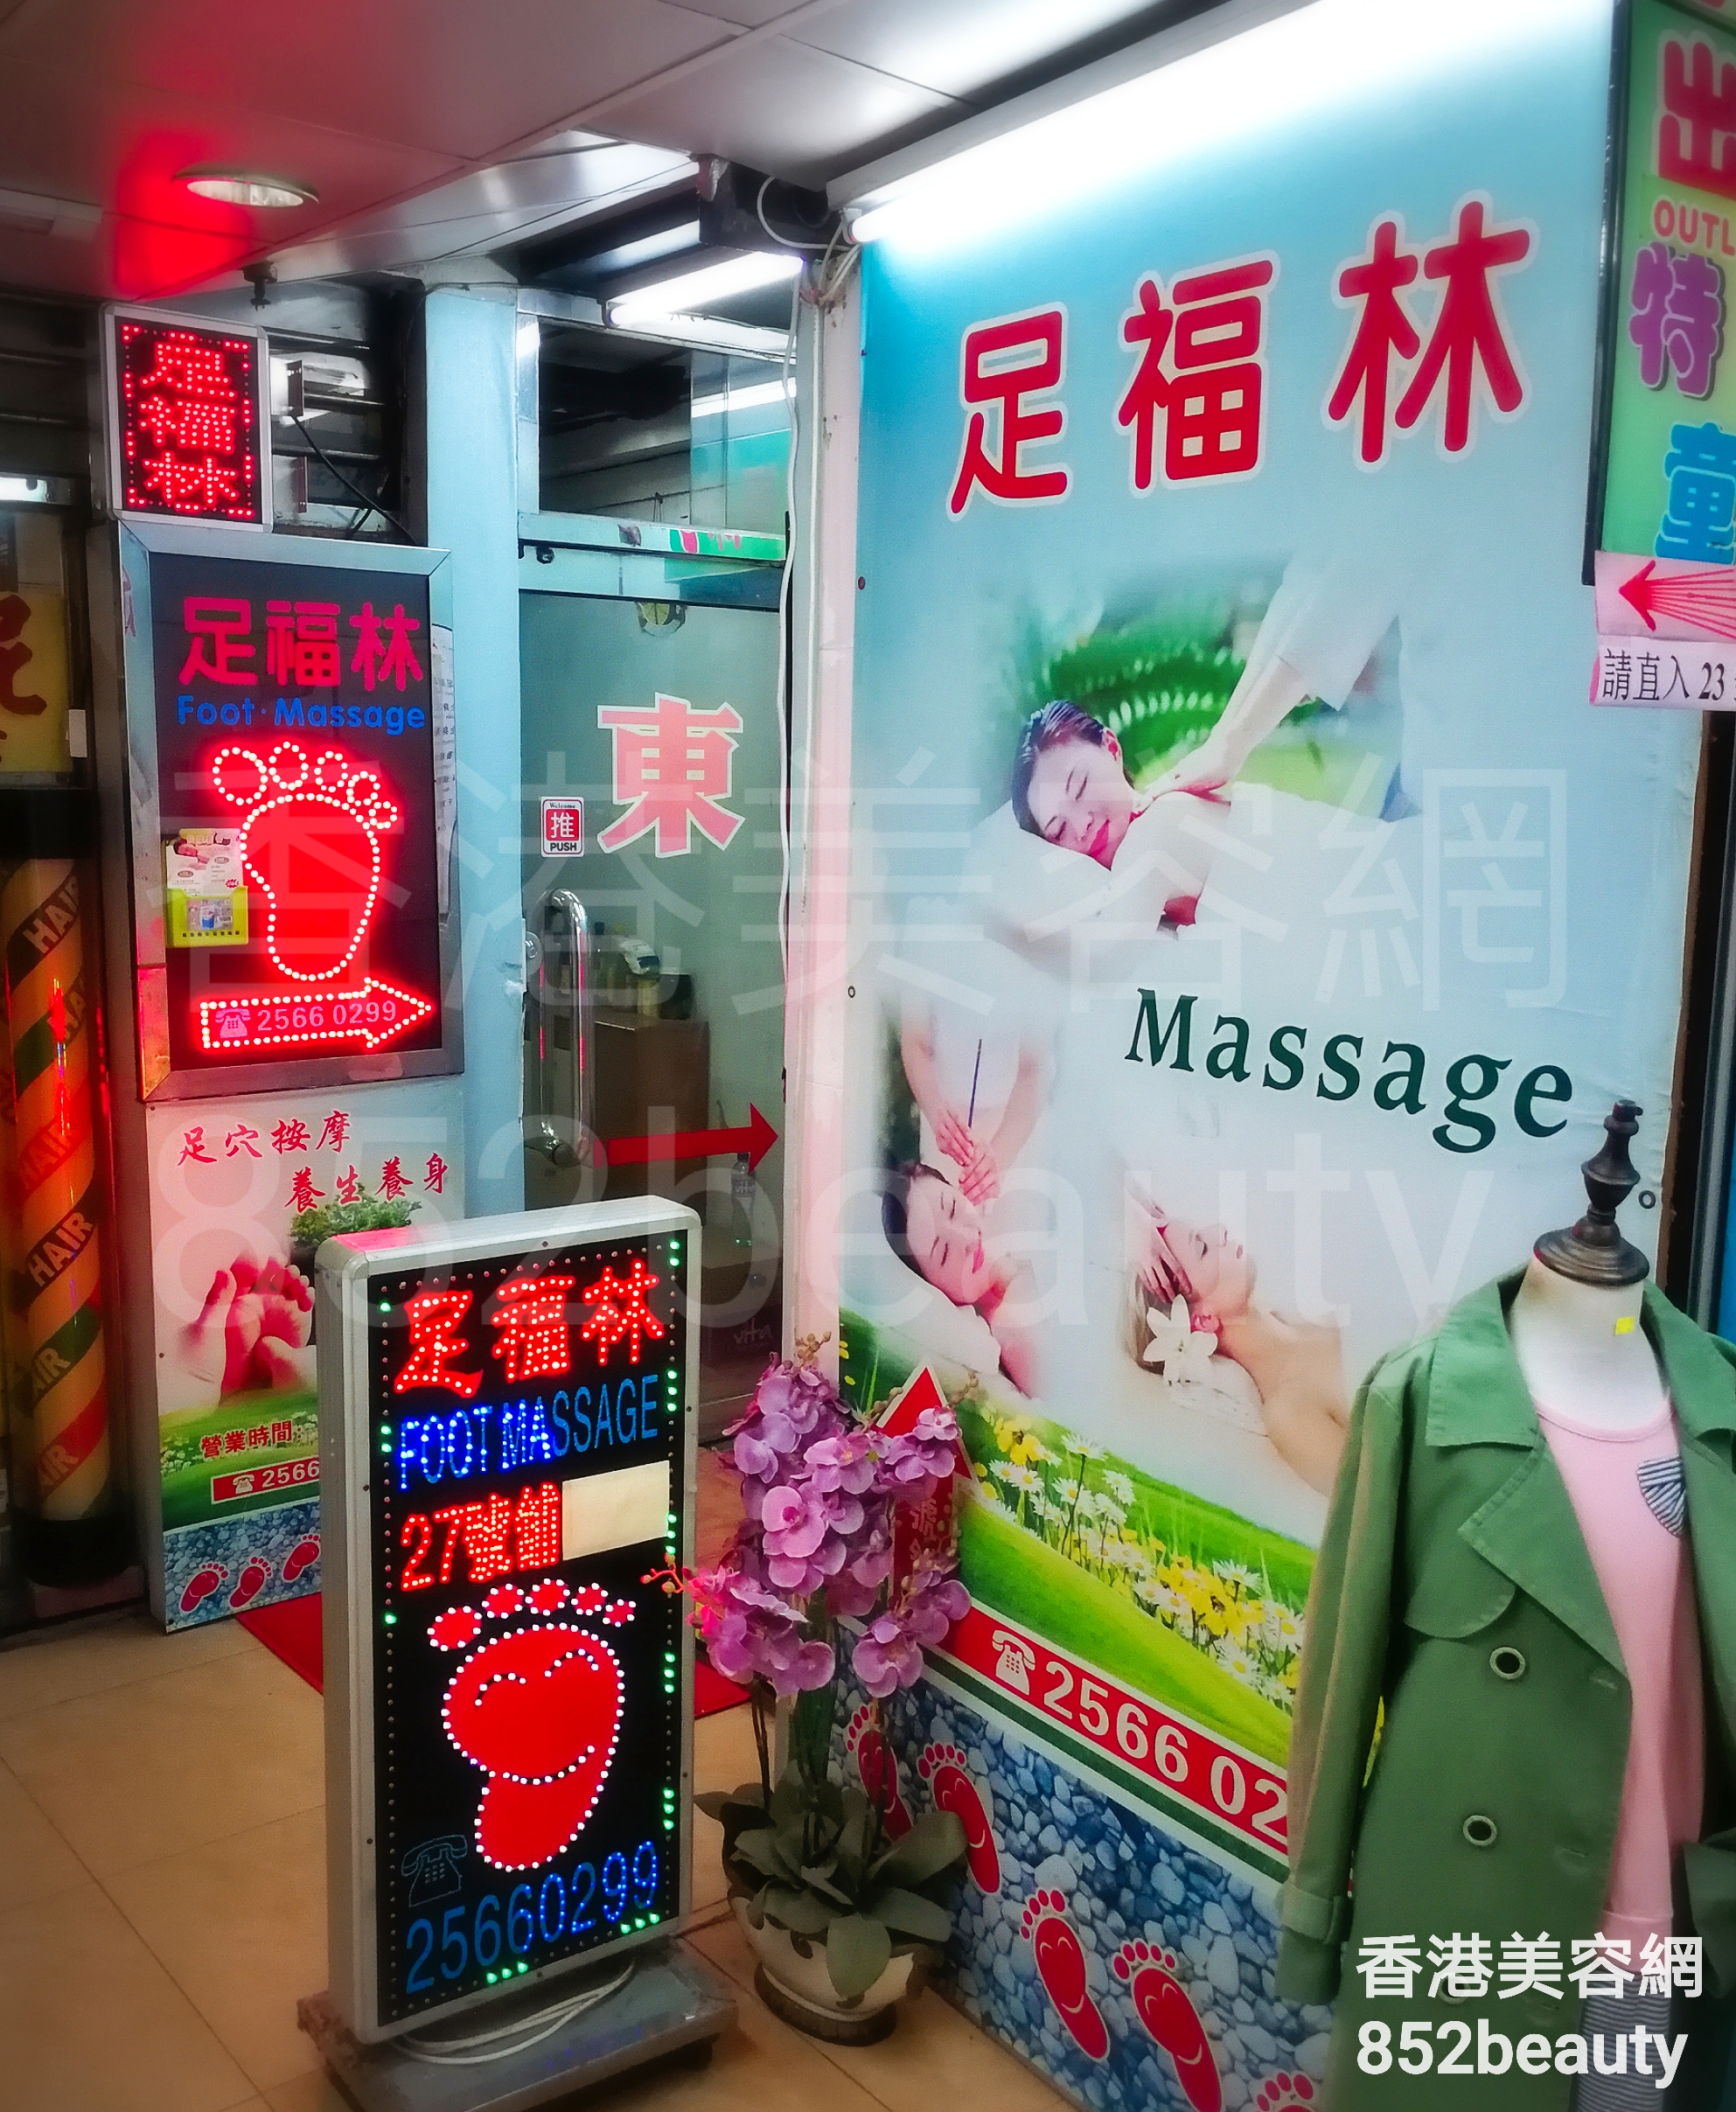 香港美容網 Hong Kong Beauty Salon 美容院 / 美容師: 足福林